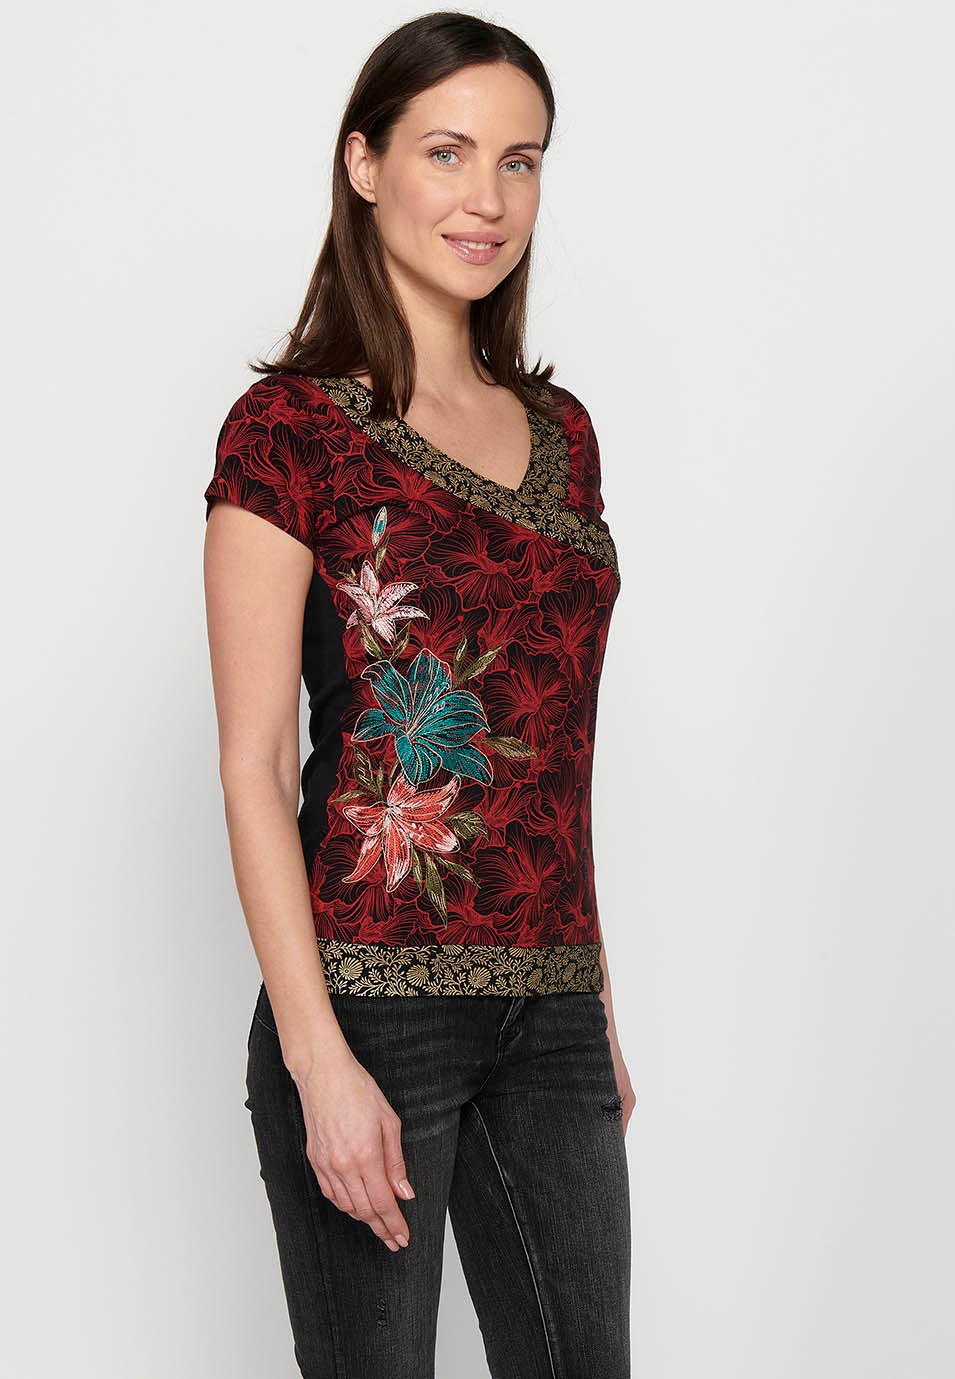 Samarreta de màniga curta, coll en bec i detalls brodats florals multicolor per a dona